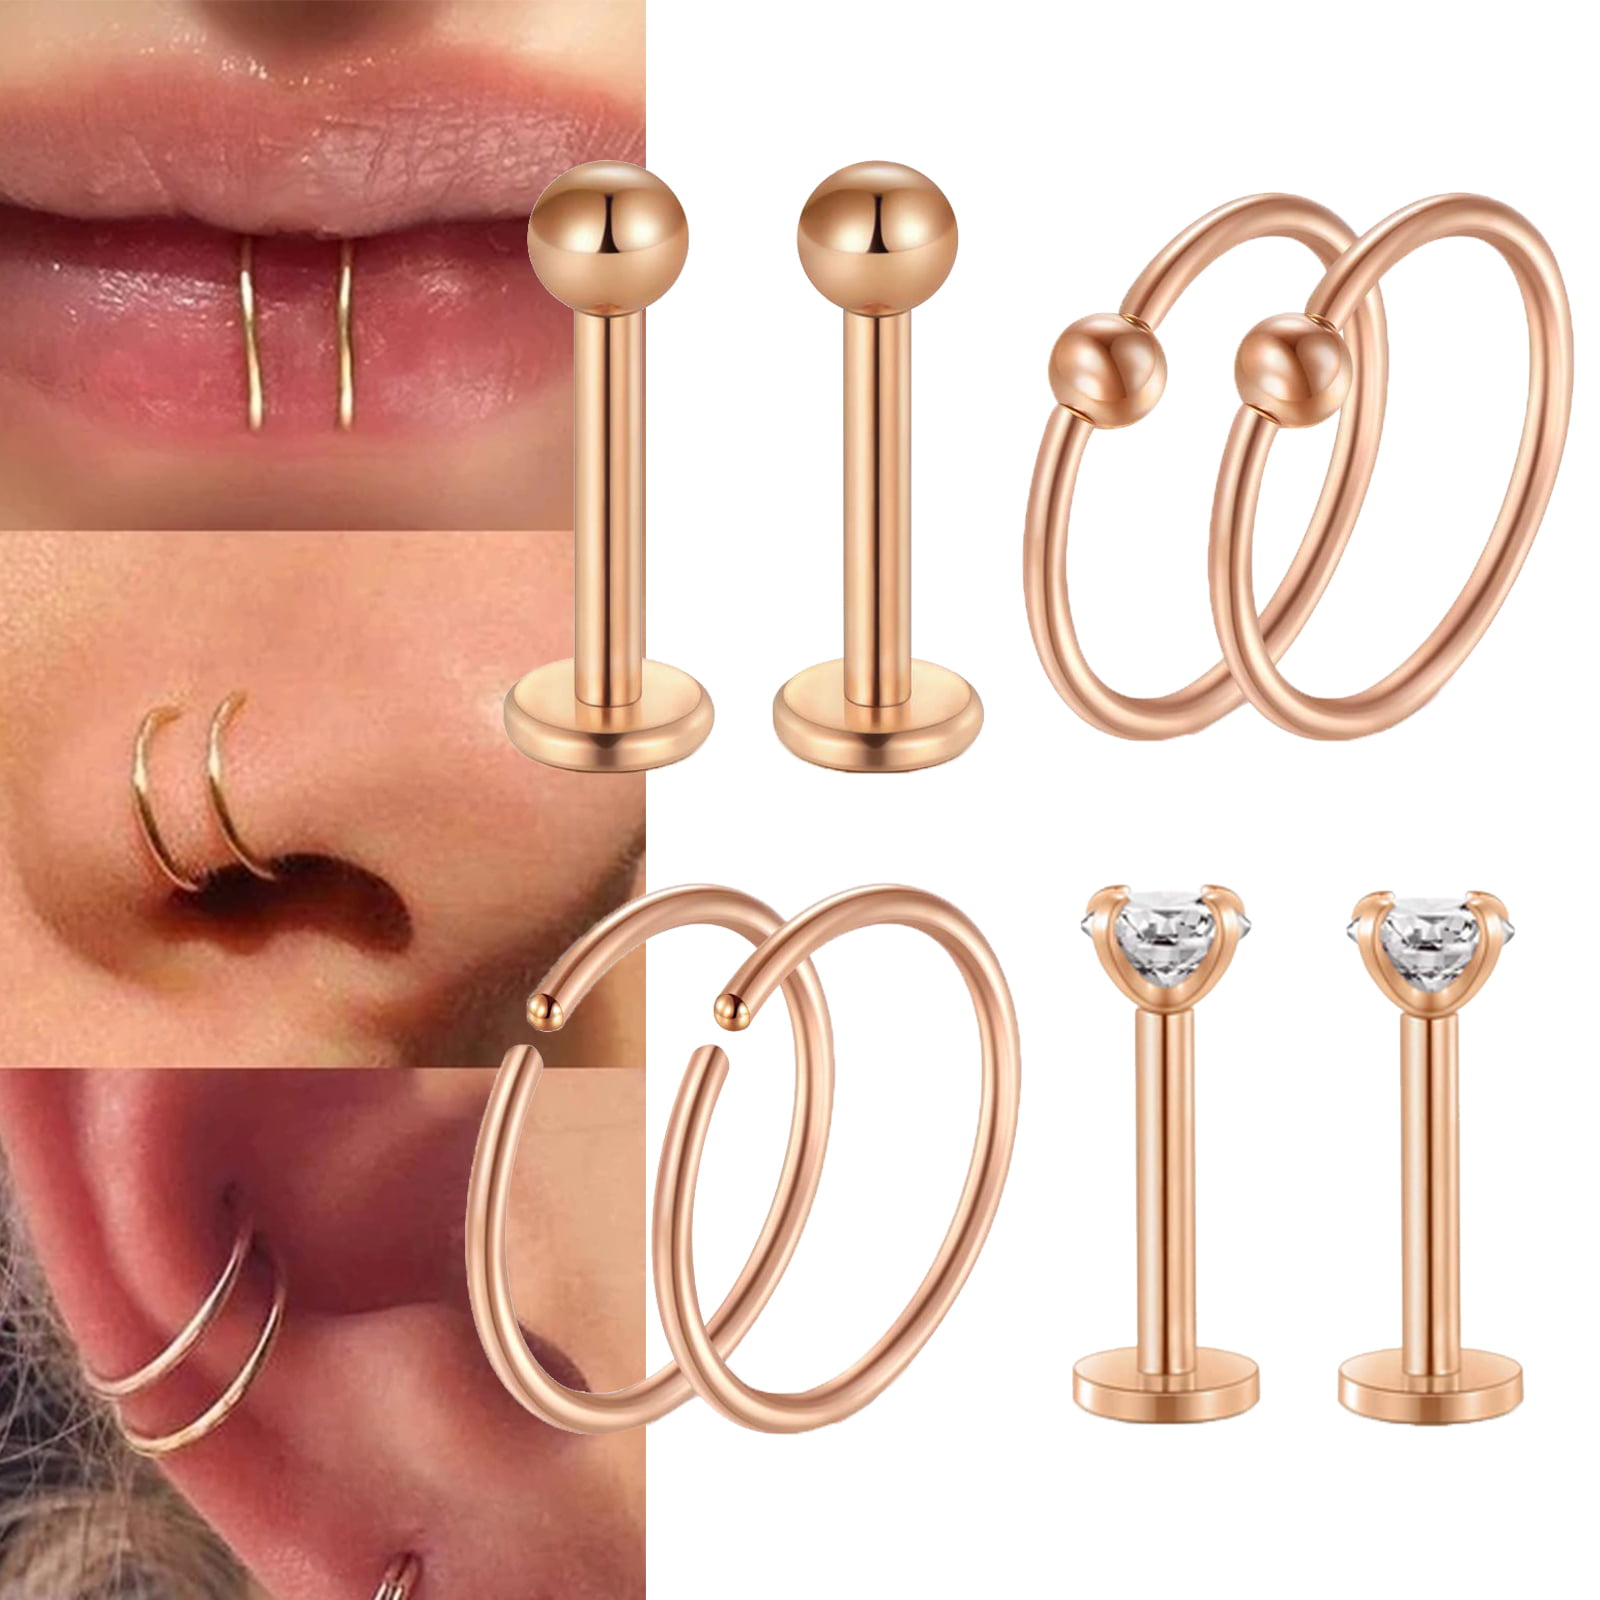 Buy 24 Gauge Pink Gold Nose Ring, 14K Rose Gold Filled Discreet Nose Hoop  Online in India - Etsy